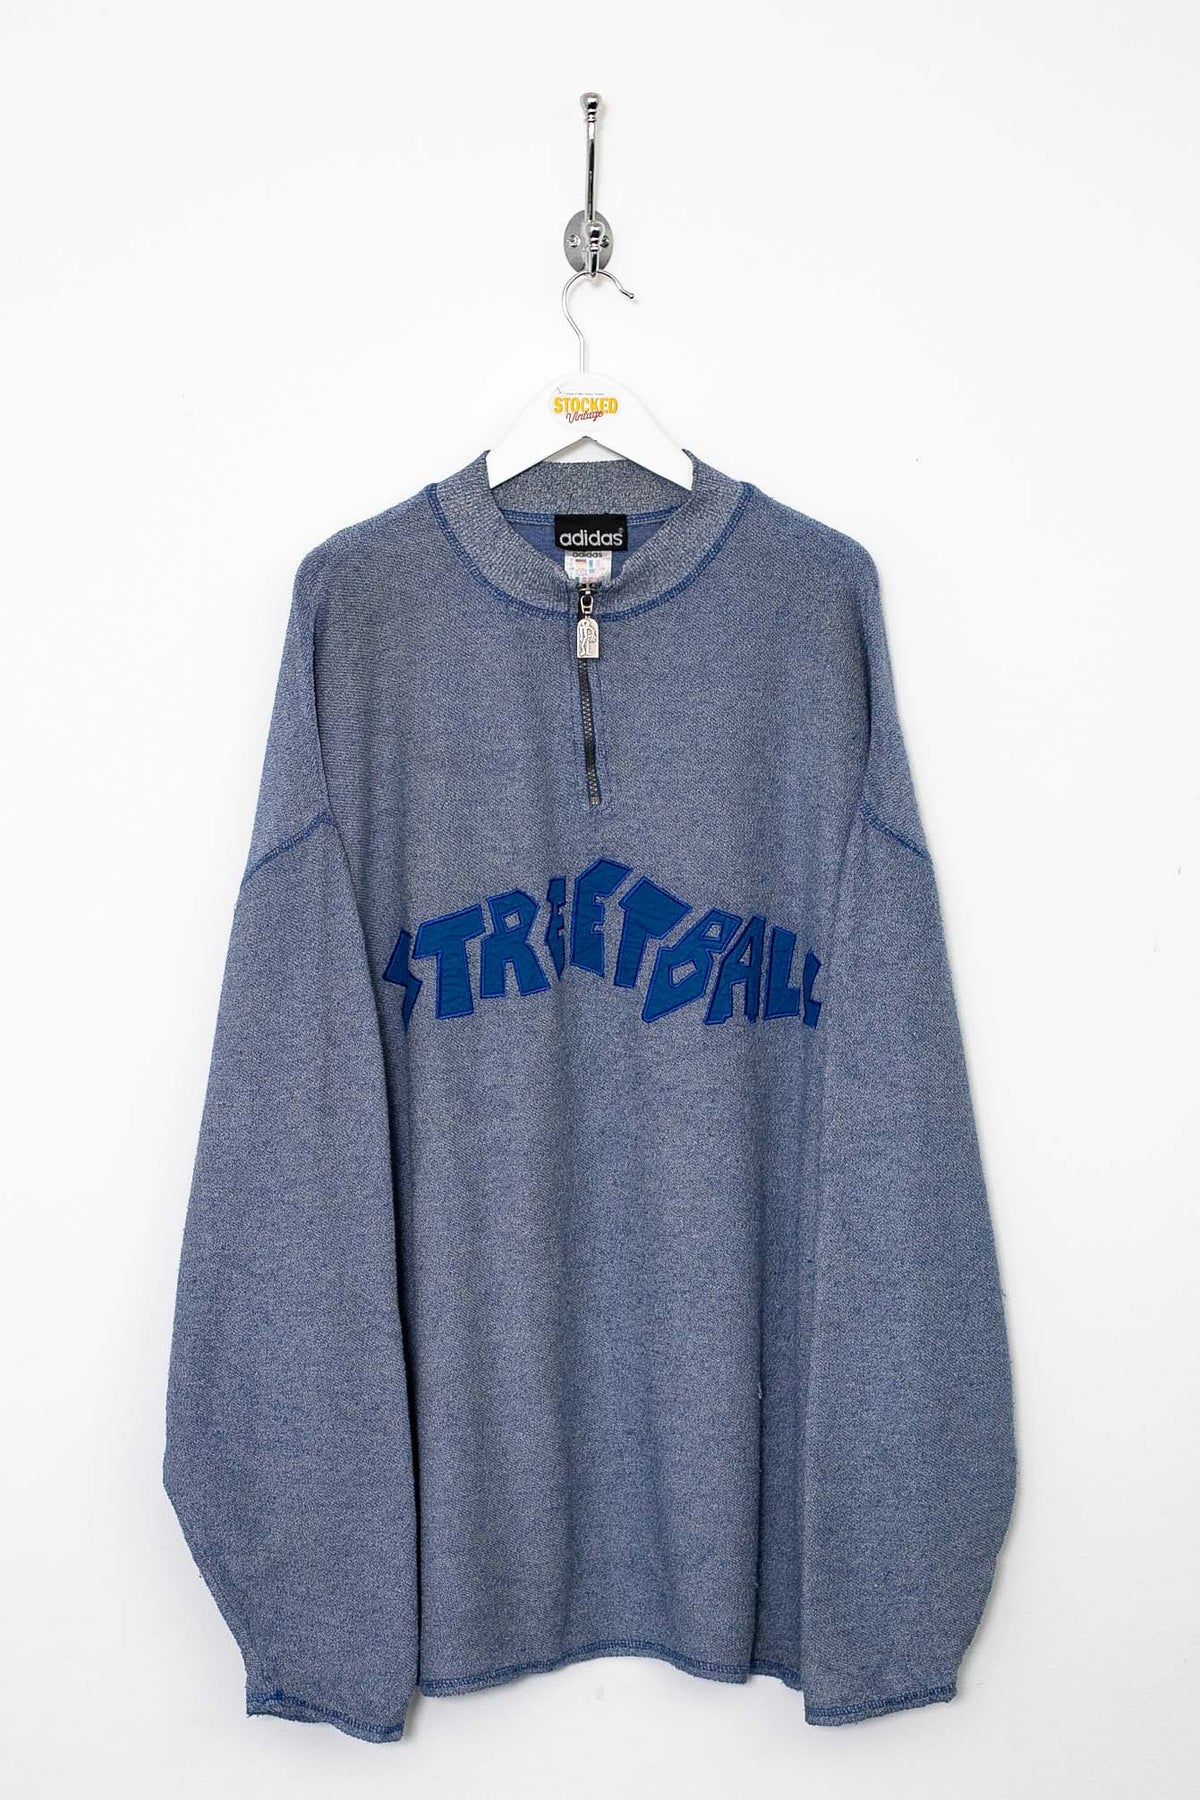 90s Adidas Streetball 1/4 Zip Sweatshirt (XL)